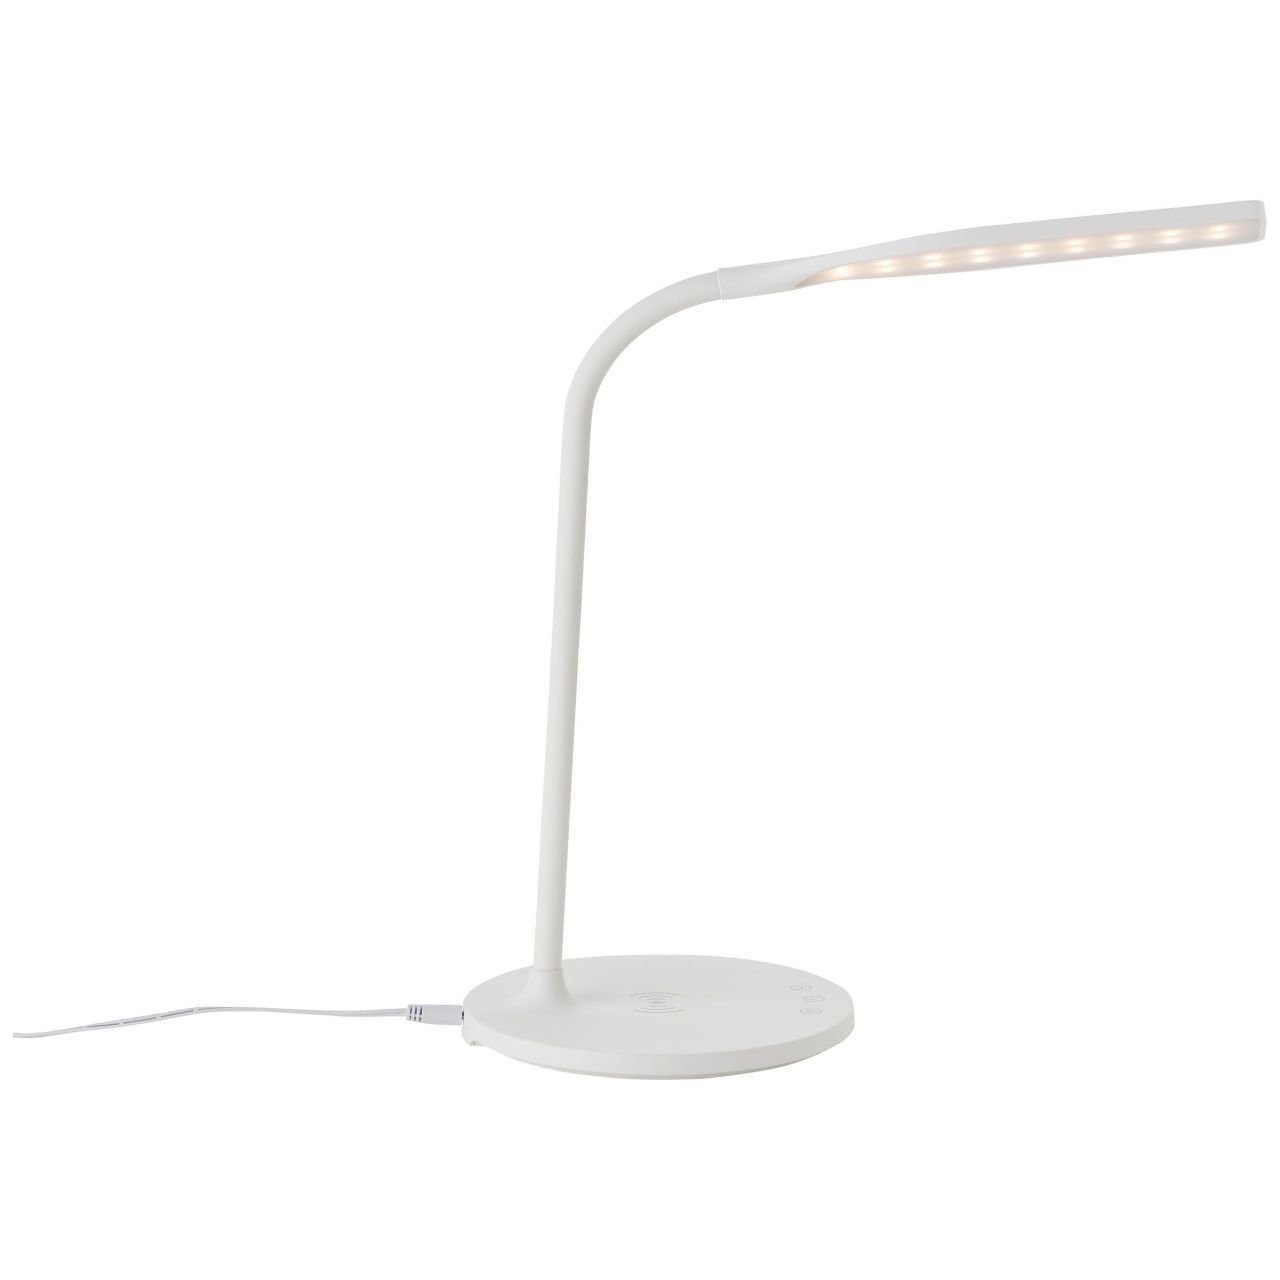 Brilliant Tischleuchte Lampe, mit Tischleuchte 1x Joni, int LED Induktionsladeschale LED weiß, 3000-5400K, Joni